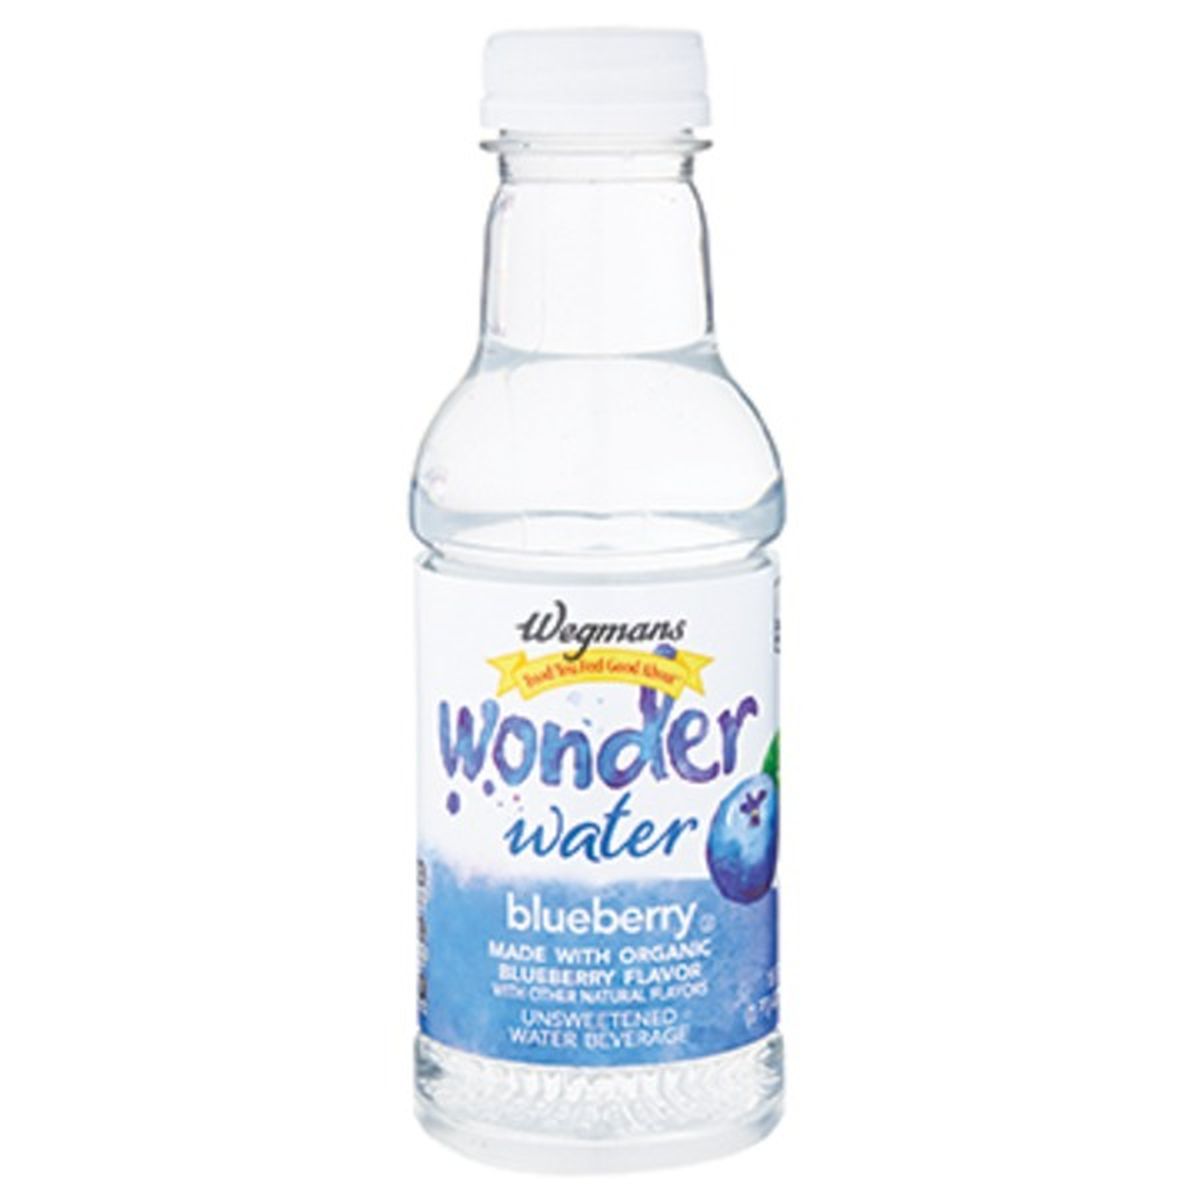 Calories in Wegmans Wonder Water Blueberry